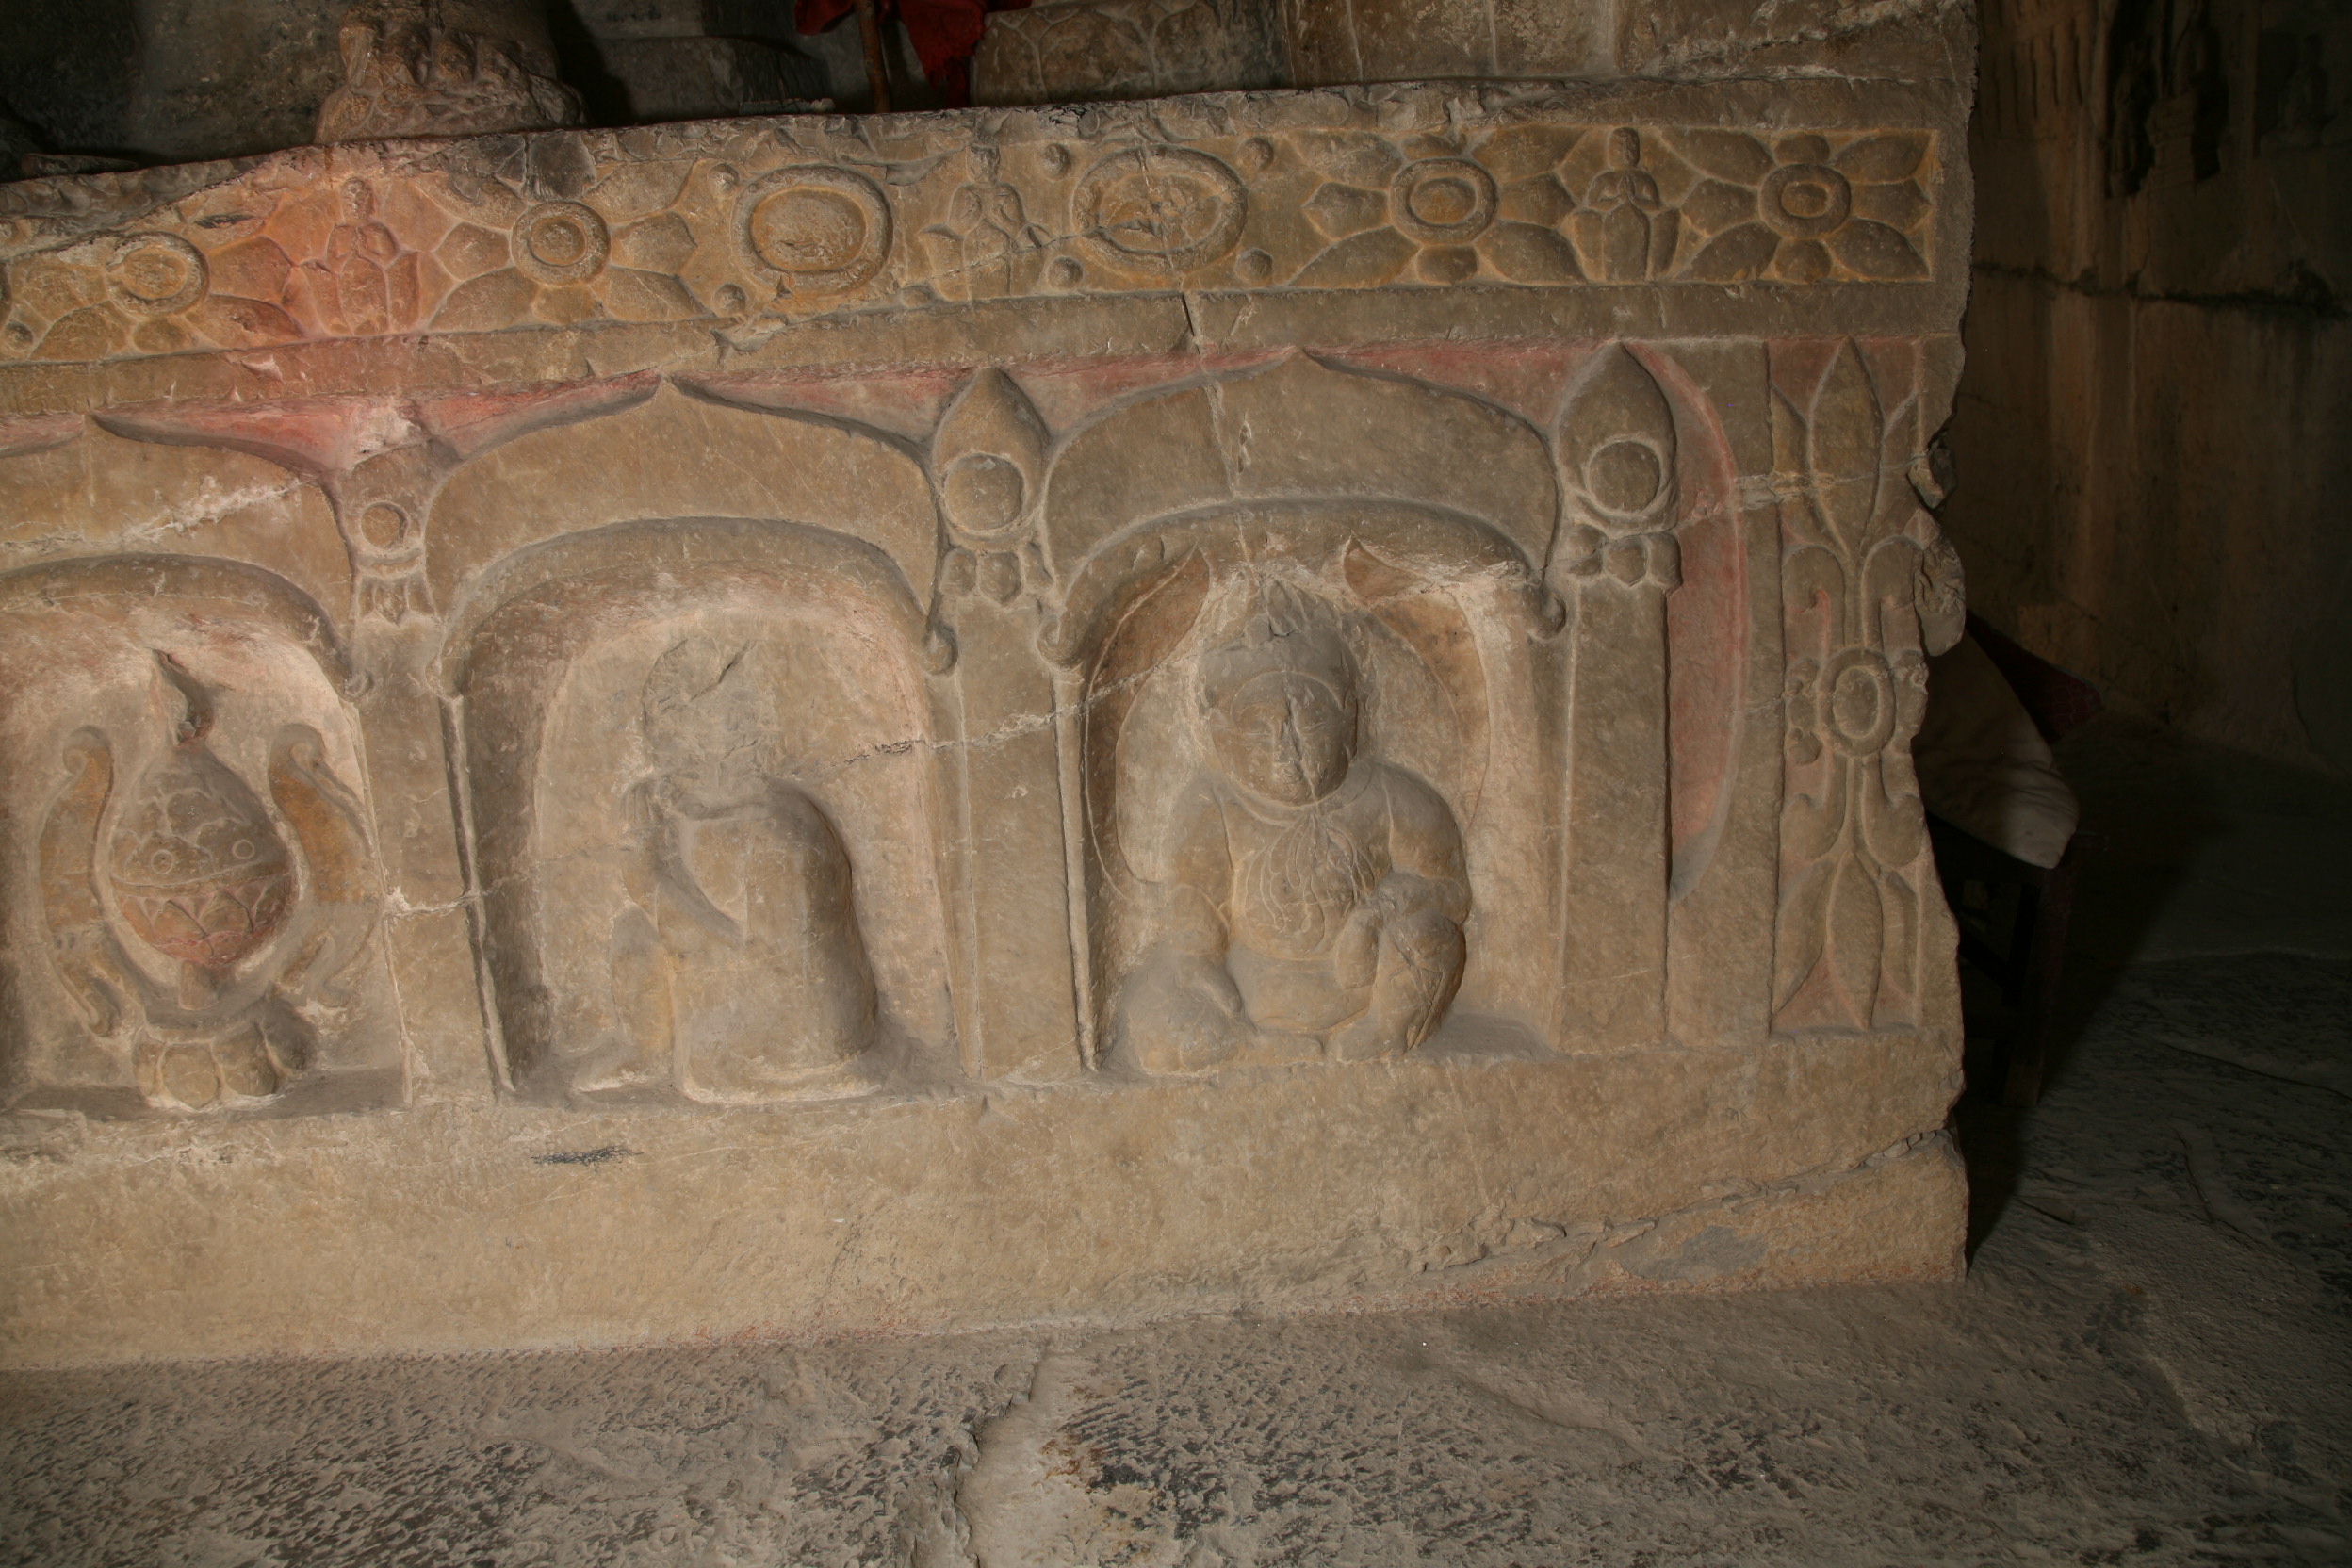 Shuiyusi West Cave, Spirit King, kneeling monk, and incense burner